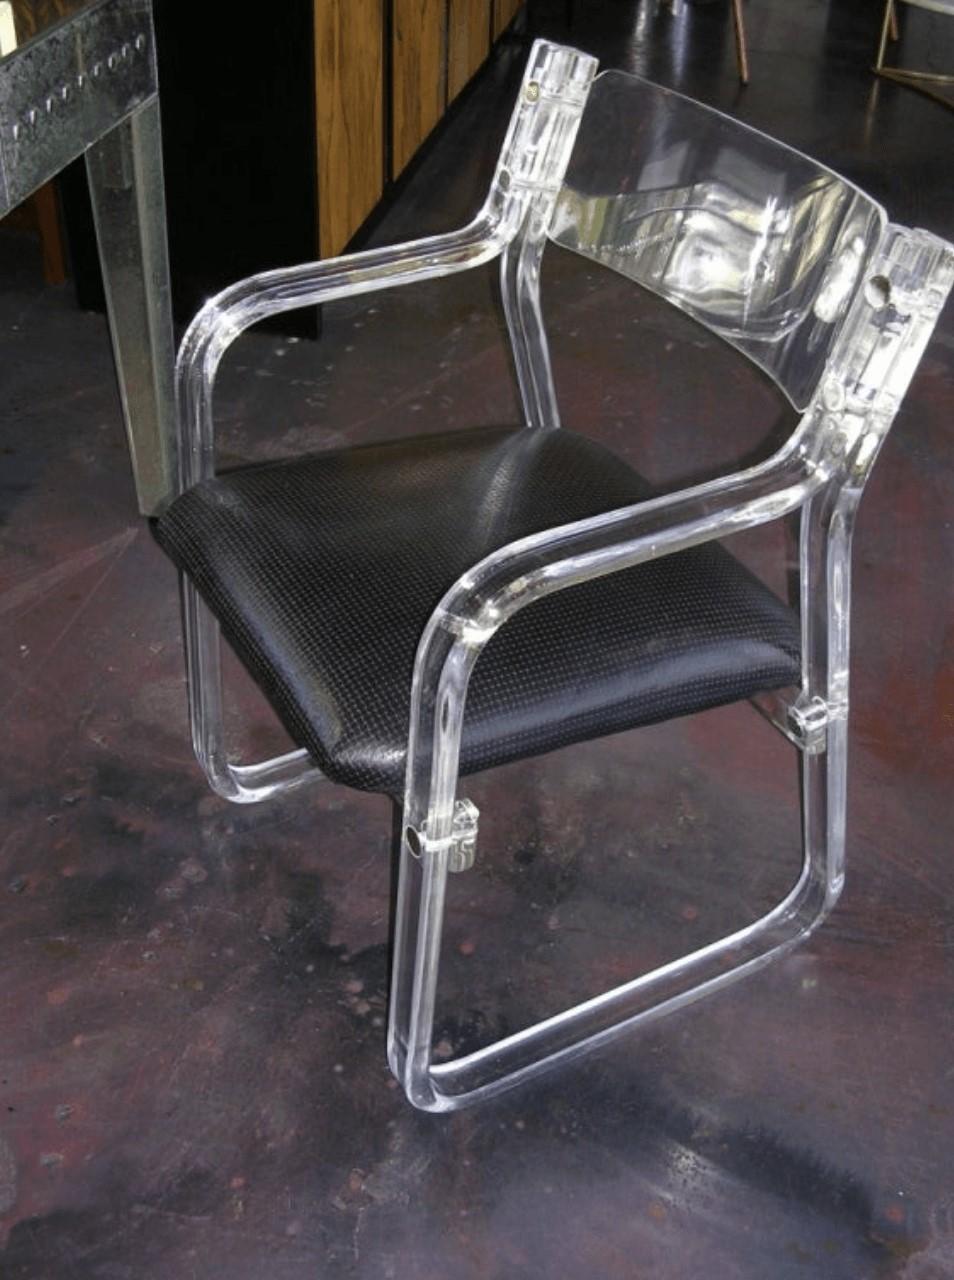 Une paire de fauteuils fonctionnels en lucite. Les sièges sont recouverts de cuir noir gaufré. Elles sont assez confortables et feraient également d'excellentes chaises de bureau.